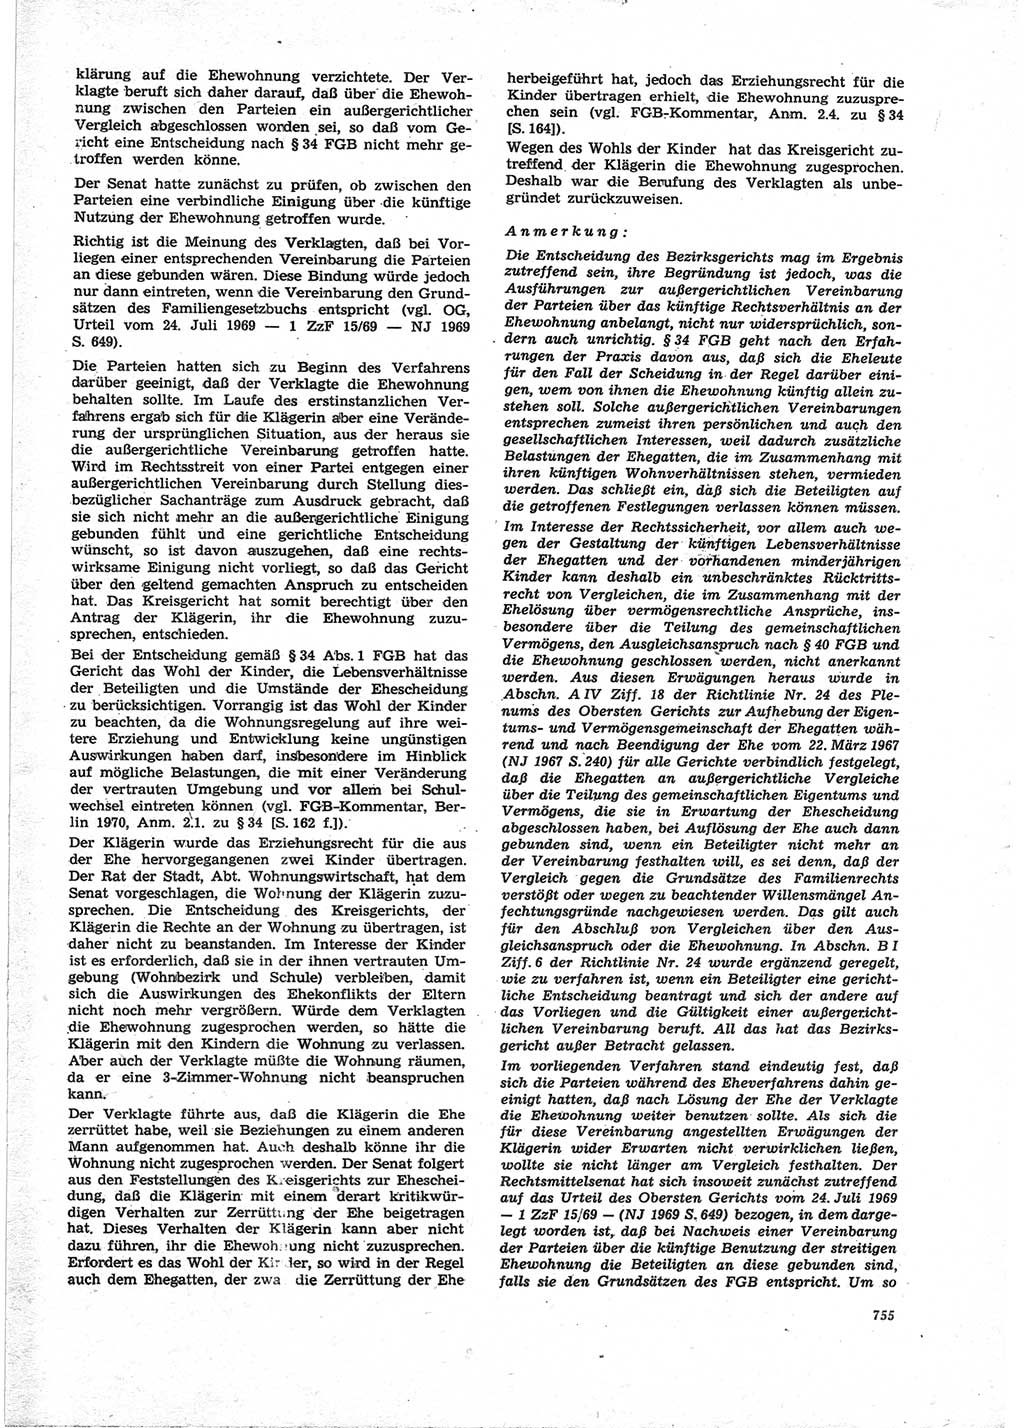 Neue Justiz (NJ), Zeitschrift für Recht und Rechtswissenschaft [Deutsche Demokratische Republik (DDR)], 25. Jahrgang 1971, Seite 755 (NJ DDR 1971, S. 755)